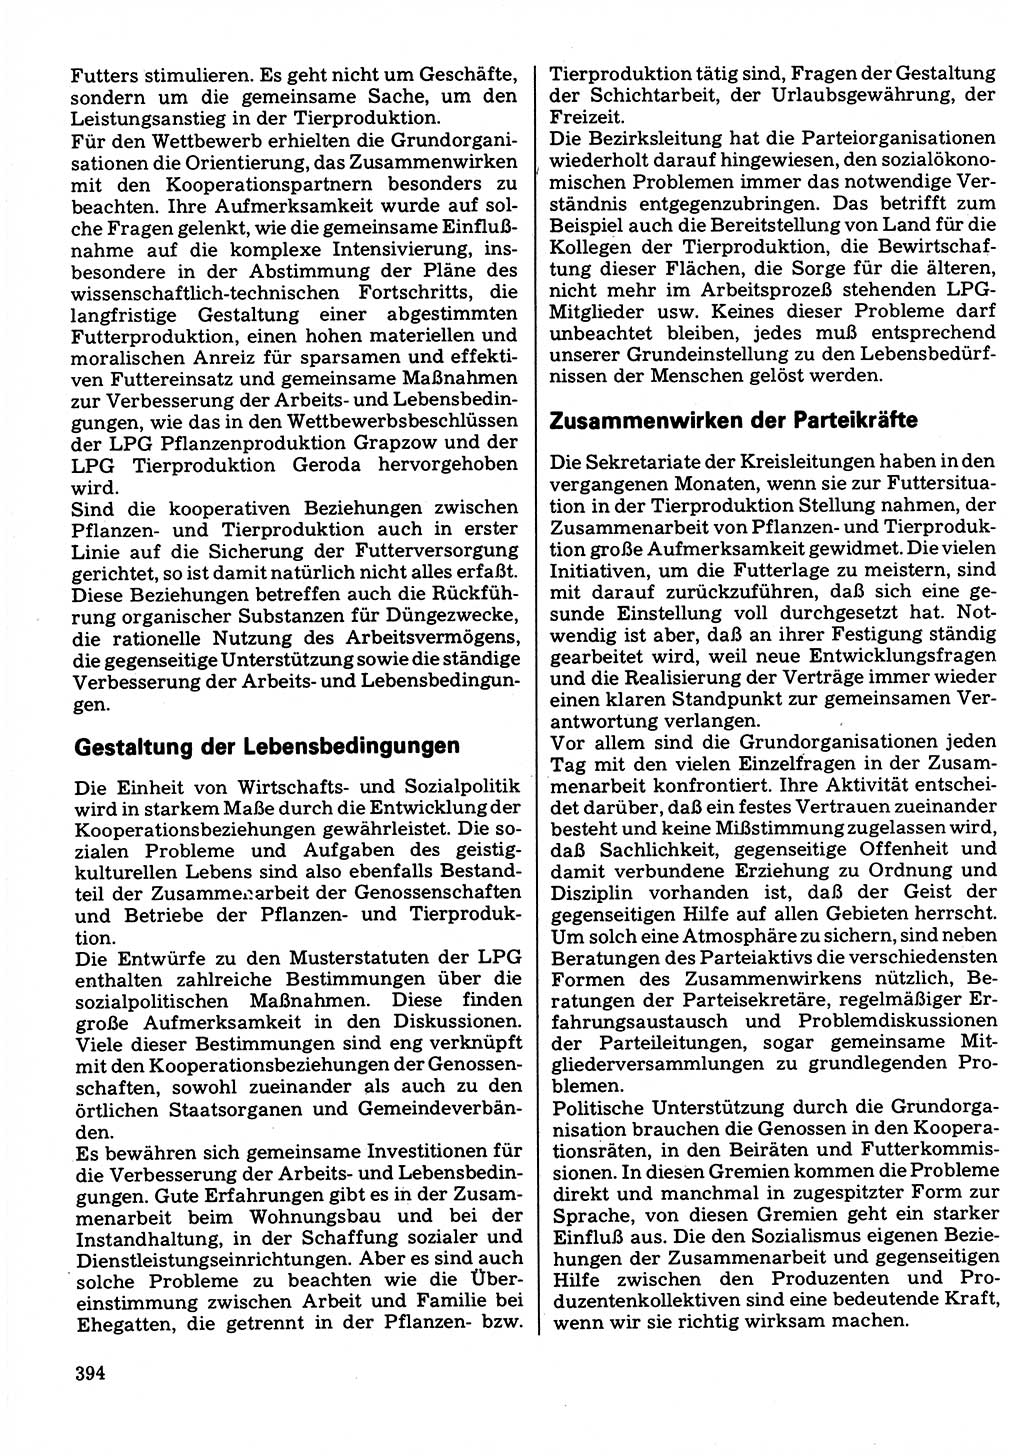 Neuer Weg (NW), Organ des Zentralkomitees (ZK) der SED (Sozialistische Einheitspartei Deutschlands) für Fragen des Parteilebens, 32. Jahrgang [Deutsche Demokratische Republik (DDR)] 1977, Seite 394 (NW ZK SED DDR 1977, S. 394)